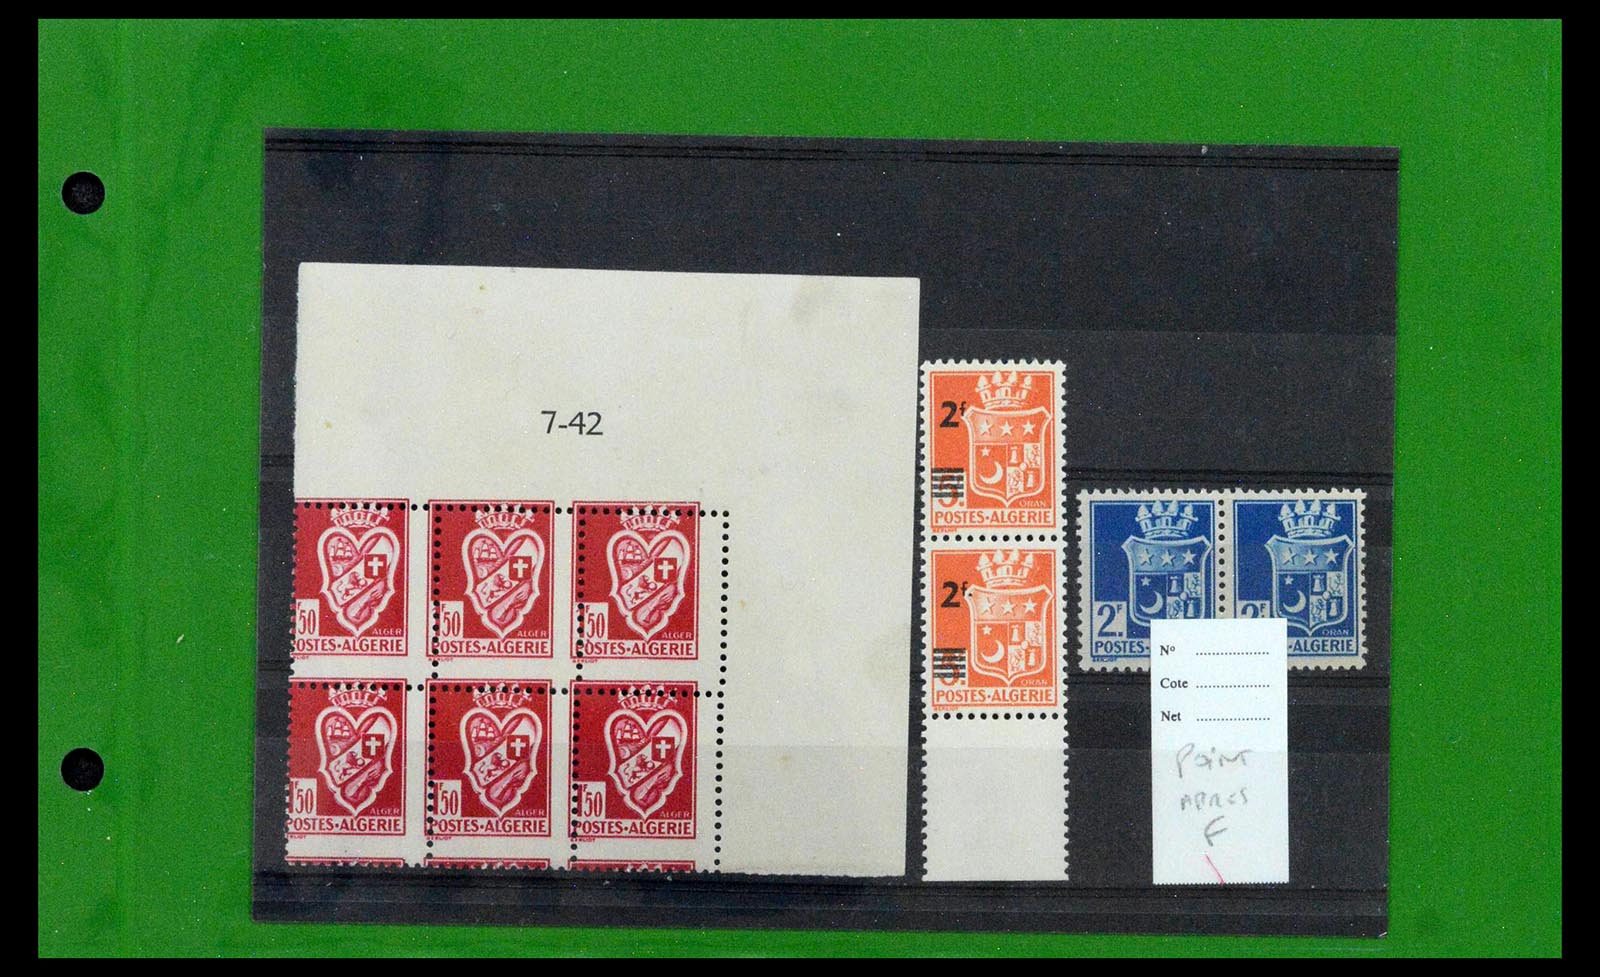 39114 0007 - Stamp collection 39114 Algeria varieties 1926-1950.